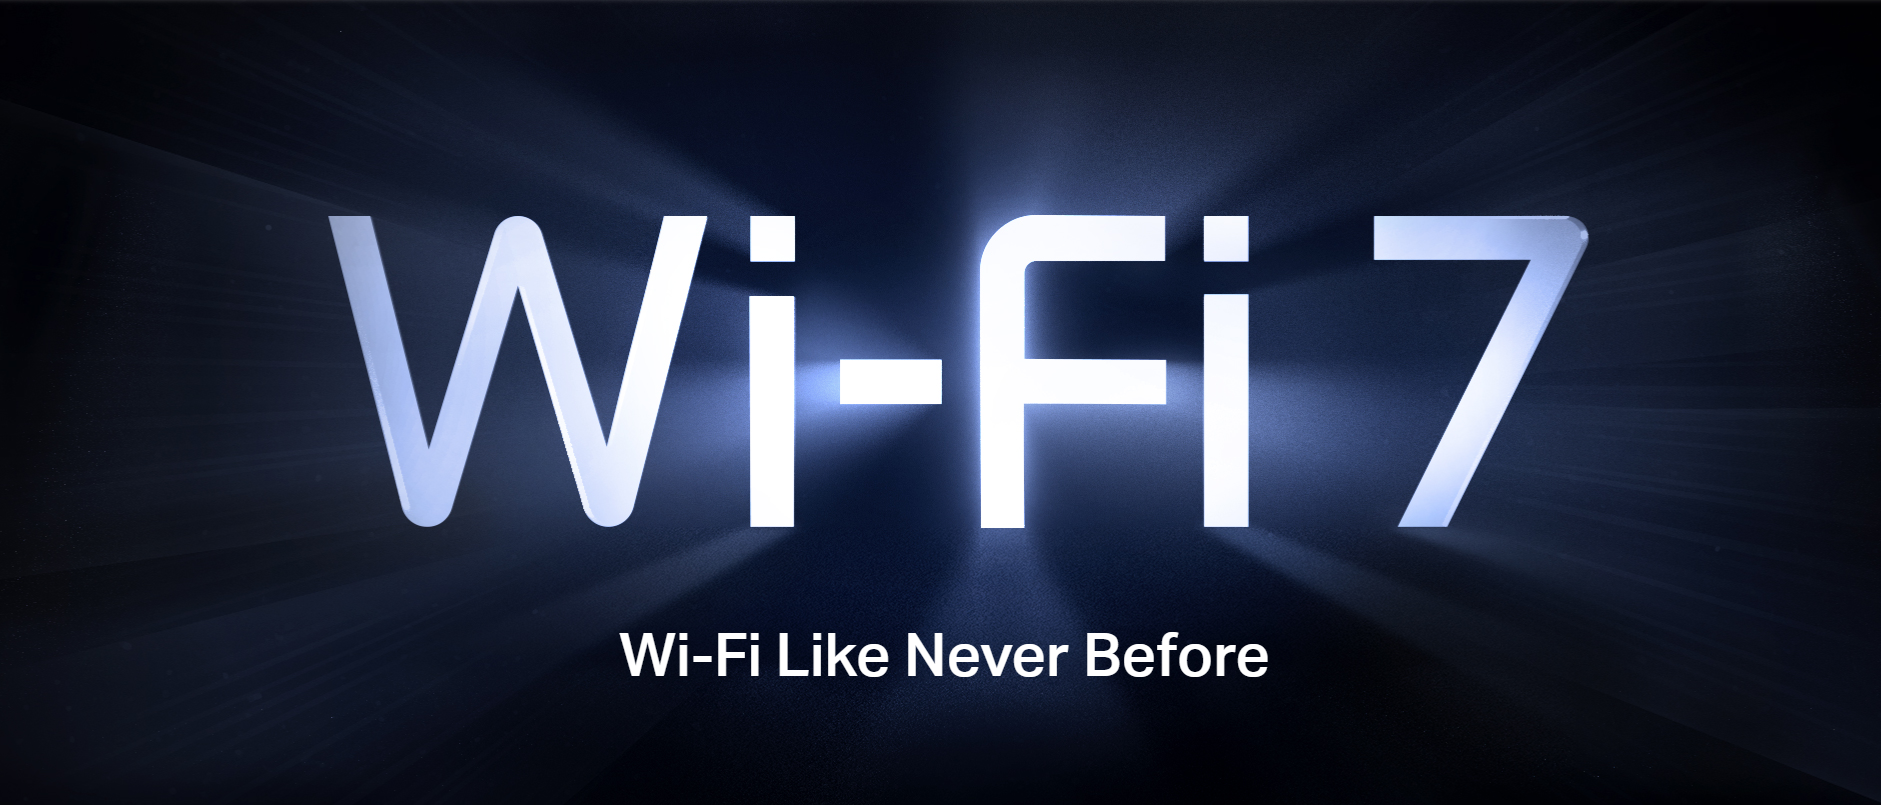 TP-Link inaugura o novo Wi-Fi 7